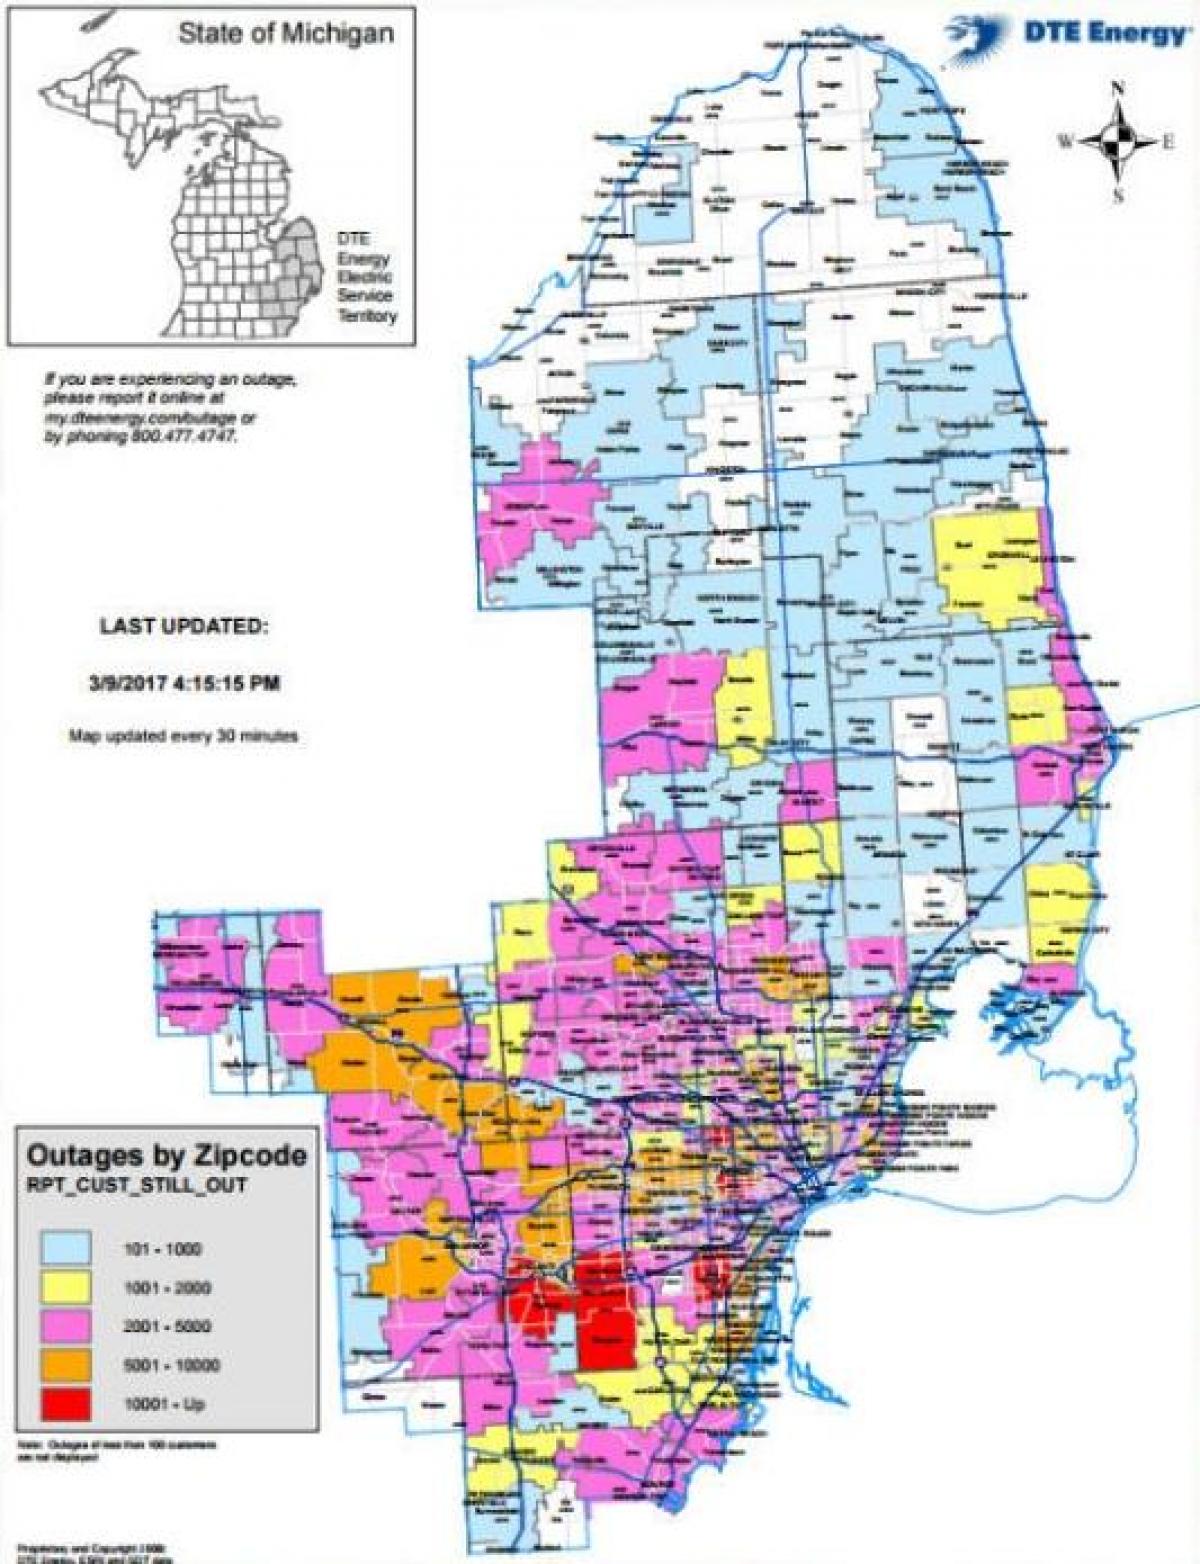 Detroit edison výpadku proudu mapě